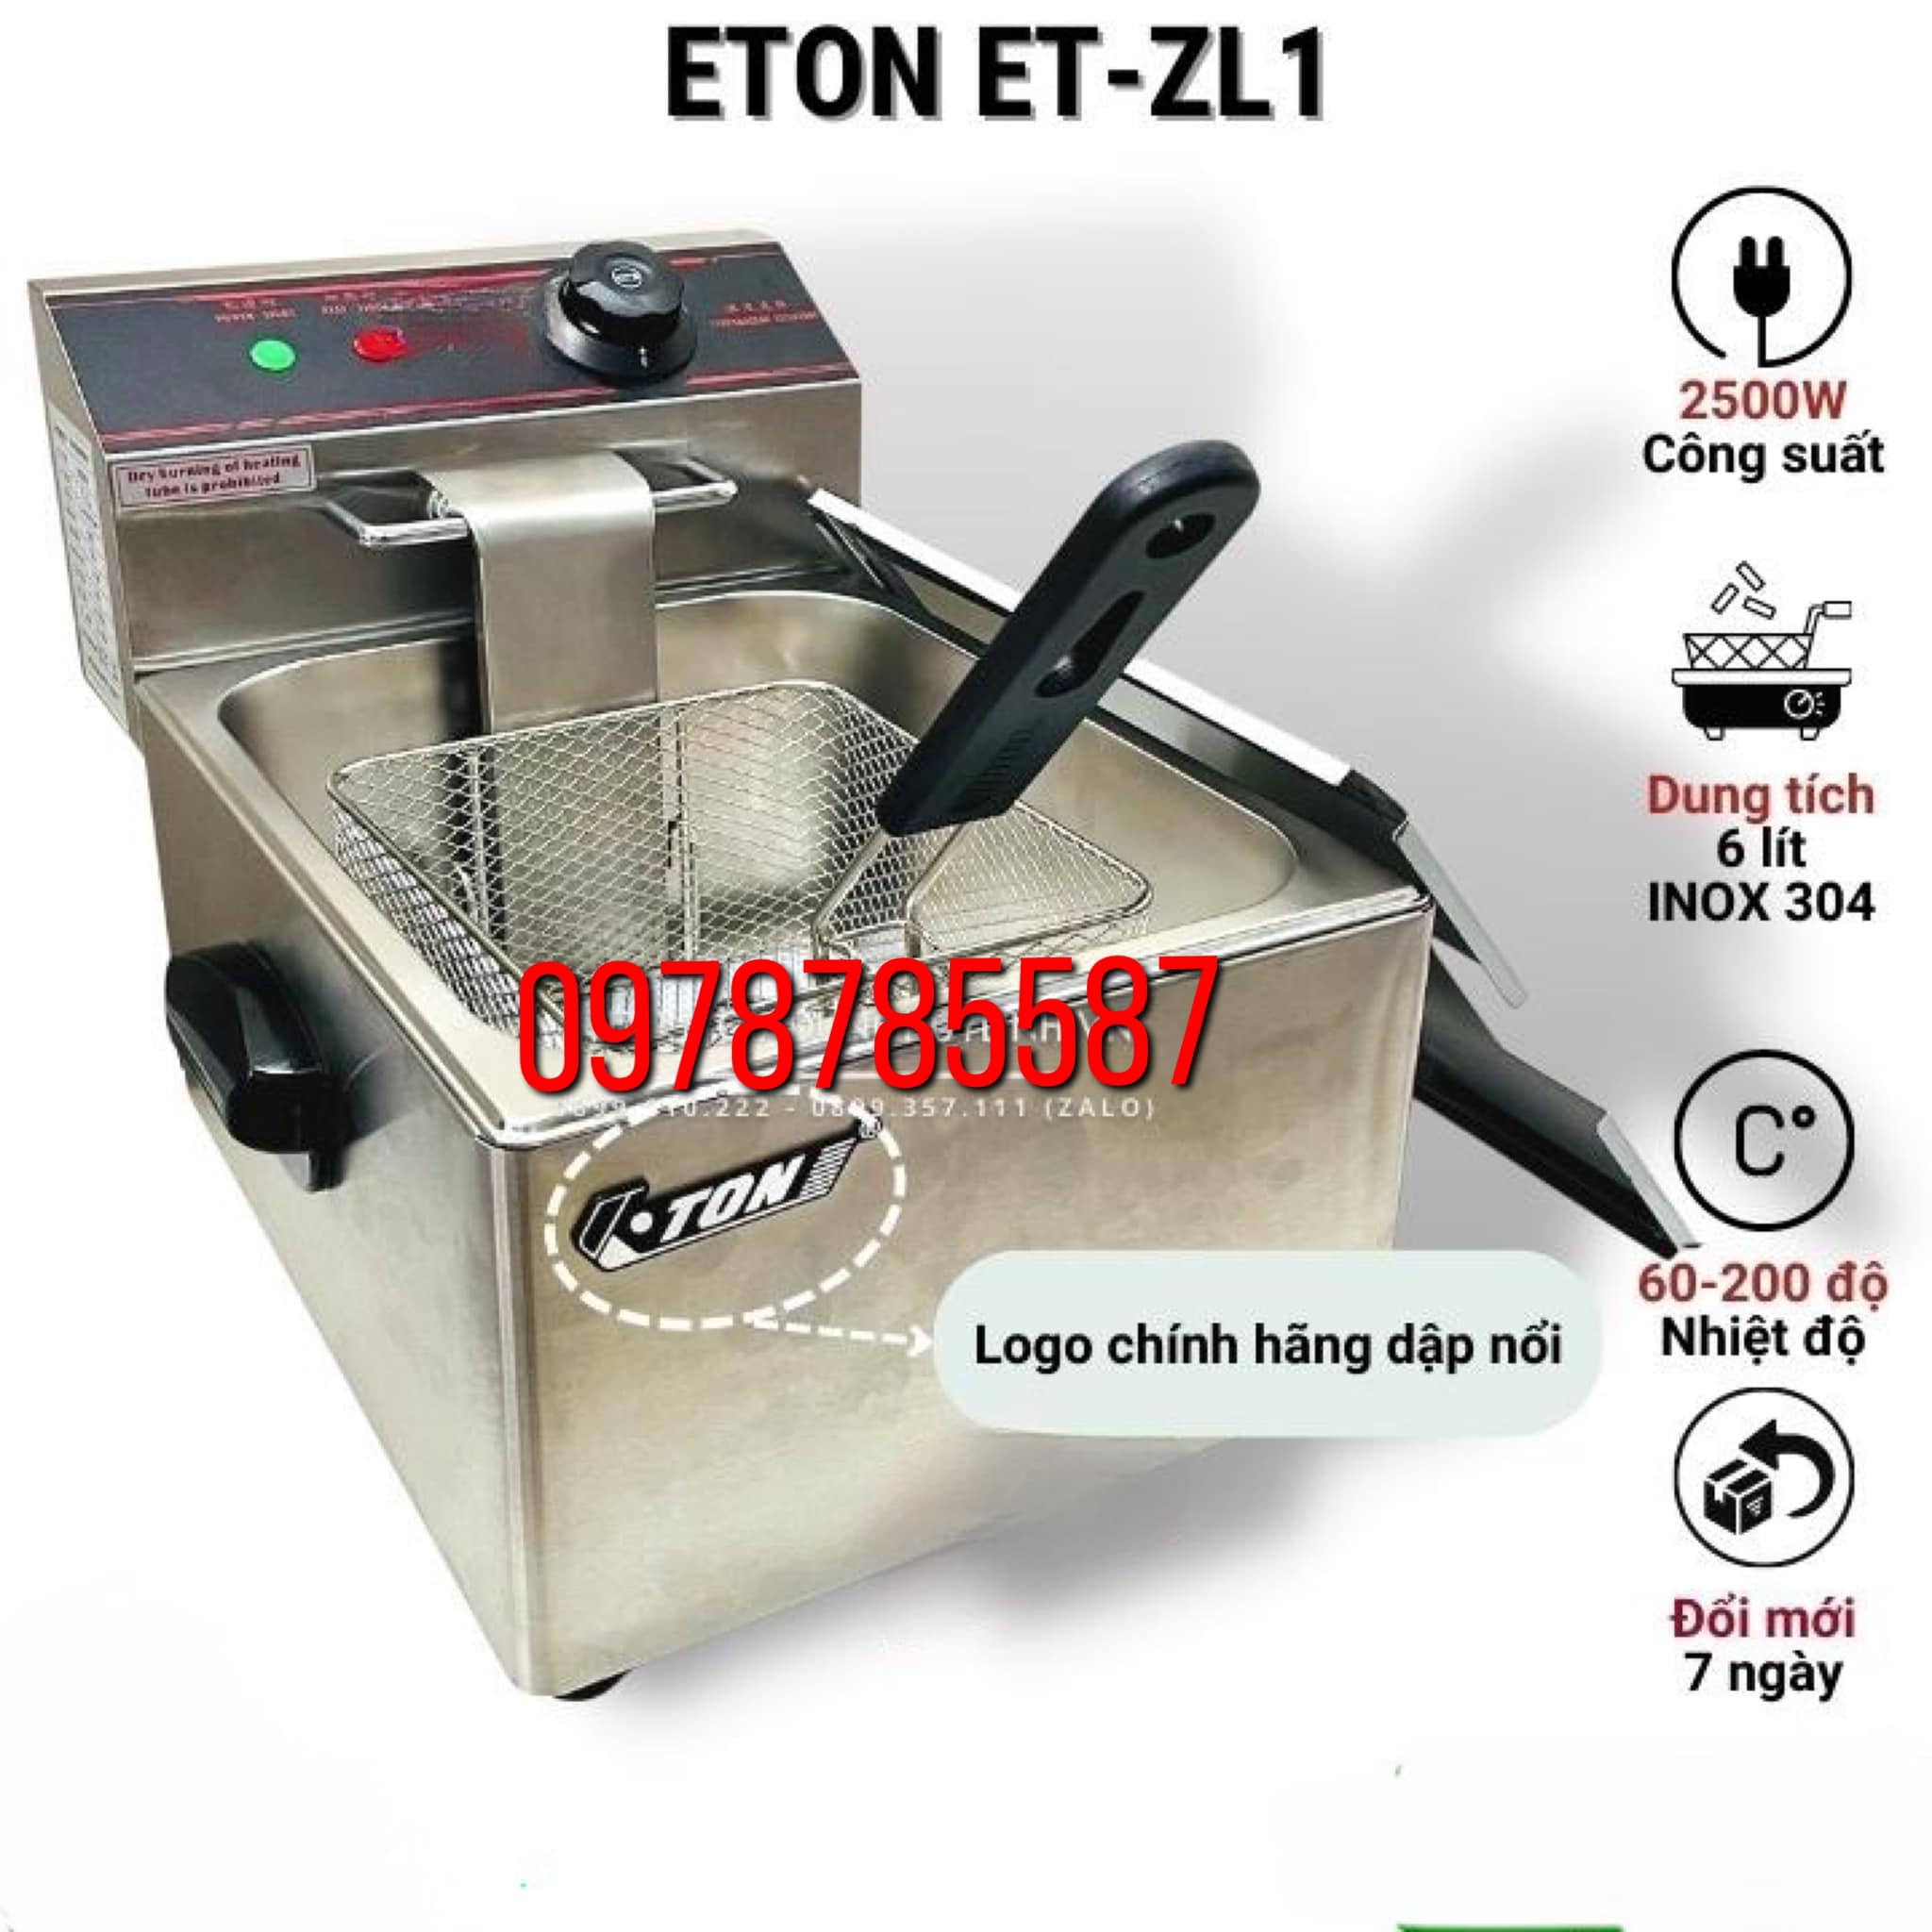 Bếp chiên nhúng đơn ngập dầu ETON ET-ZL1 - Dung tích 6 lít - Inox 304